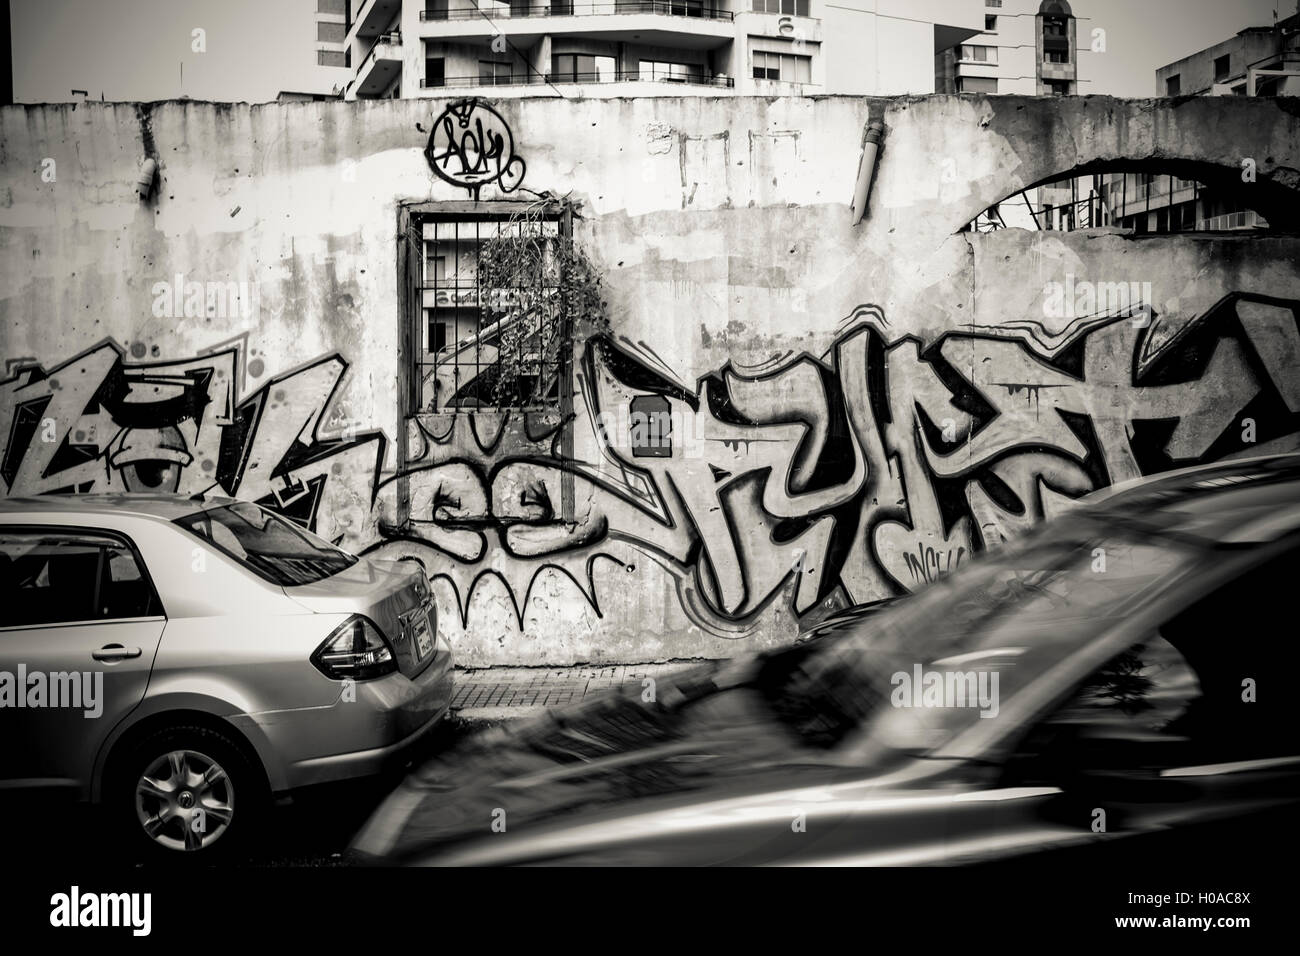 Les graffitis à Beyrouth - 10/09/2015 - Liban / Beyrouth - Beyrouth, Achrafieh, sept 2015. Un mur par Barok (à gauche) et Phat 02 (droite). - Bilal Tarabey / Le Pictorium Banque D'Images